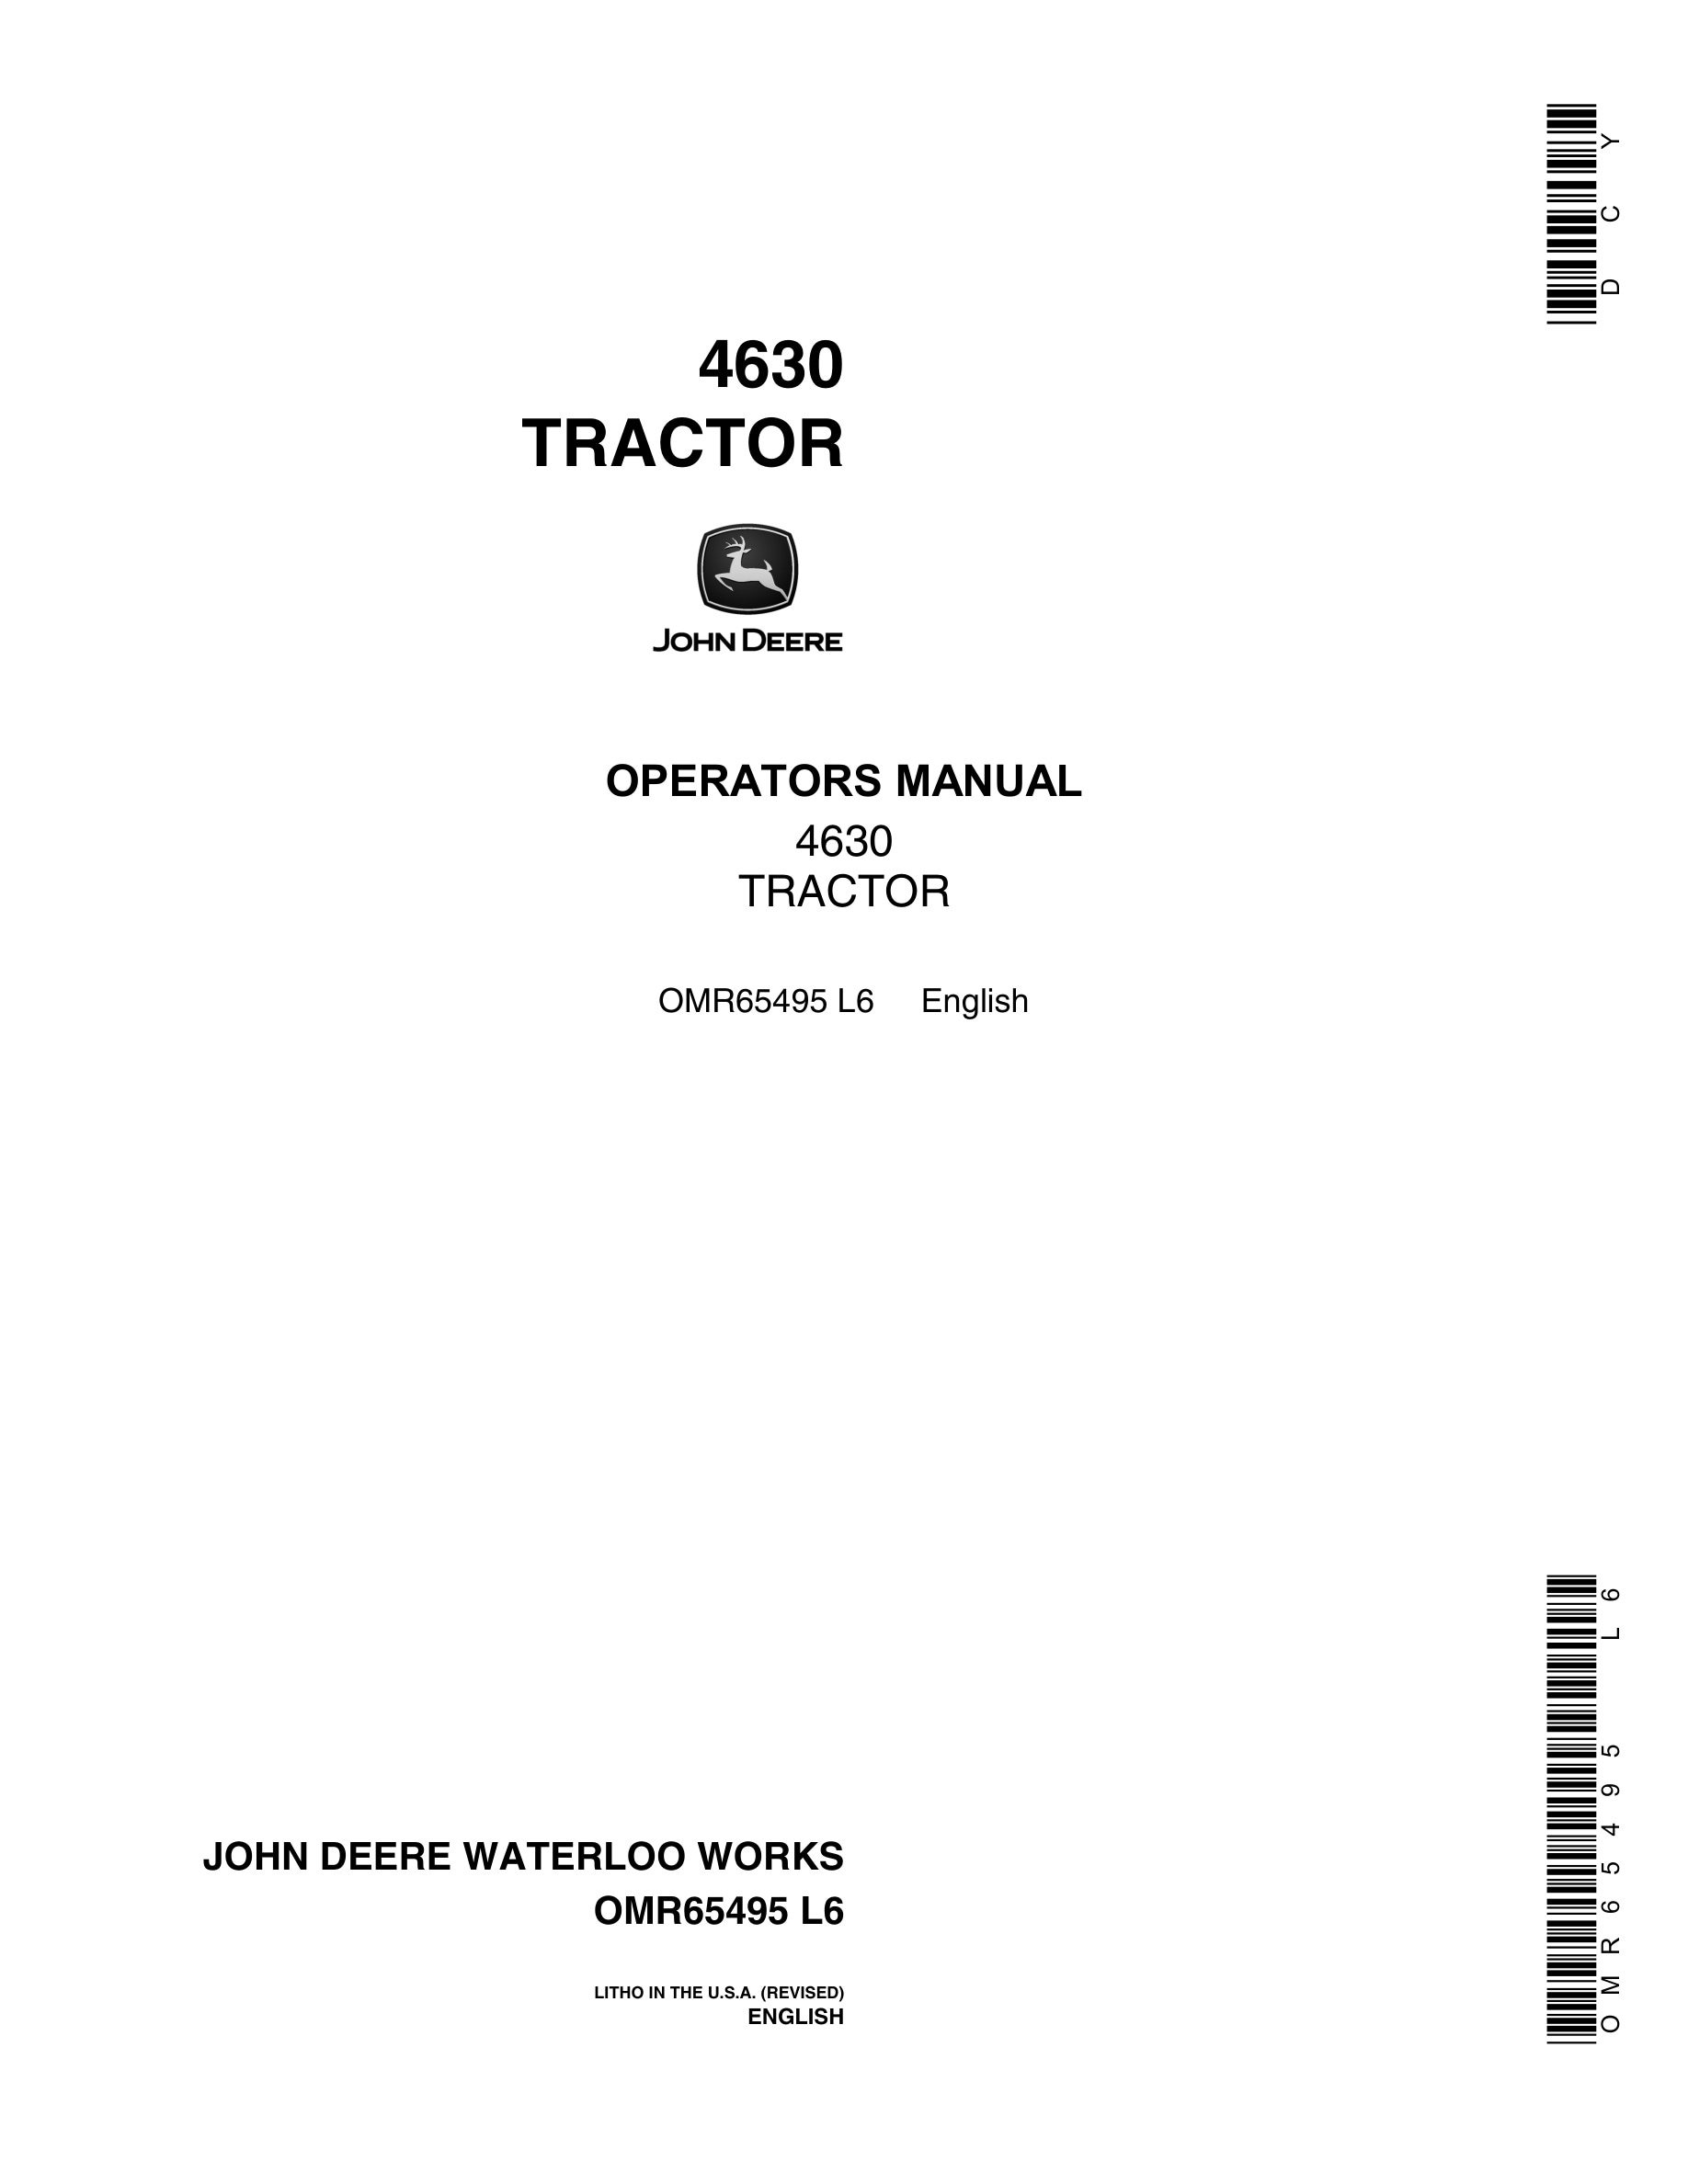 John Deere 4630 Tractor Operator Manual OMR65495-1